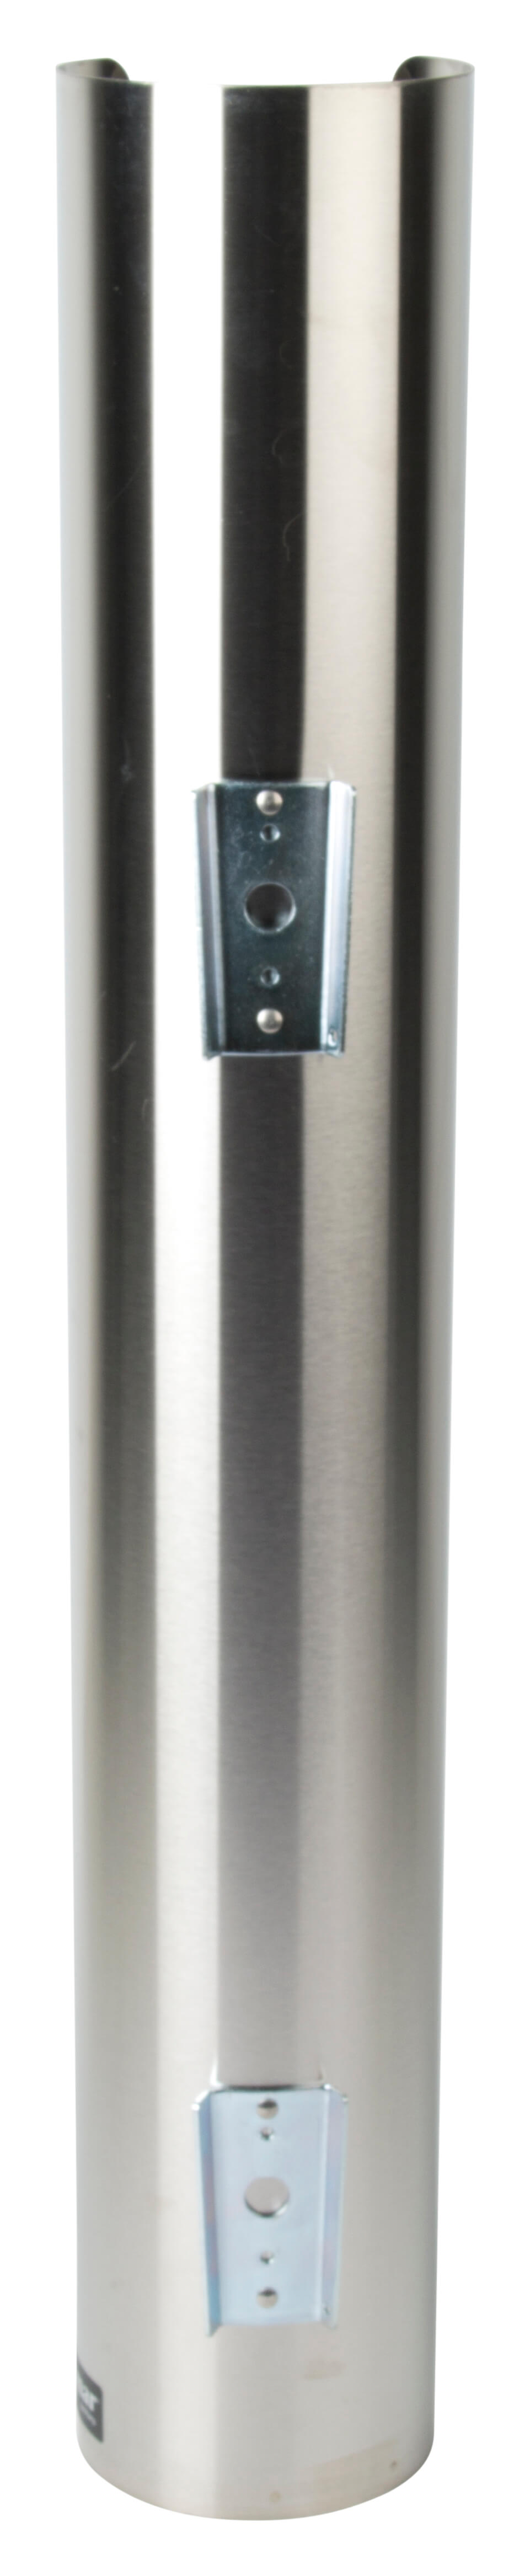 Lid Dispenser, stainless steel - 89mm